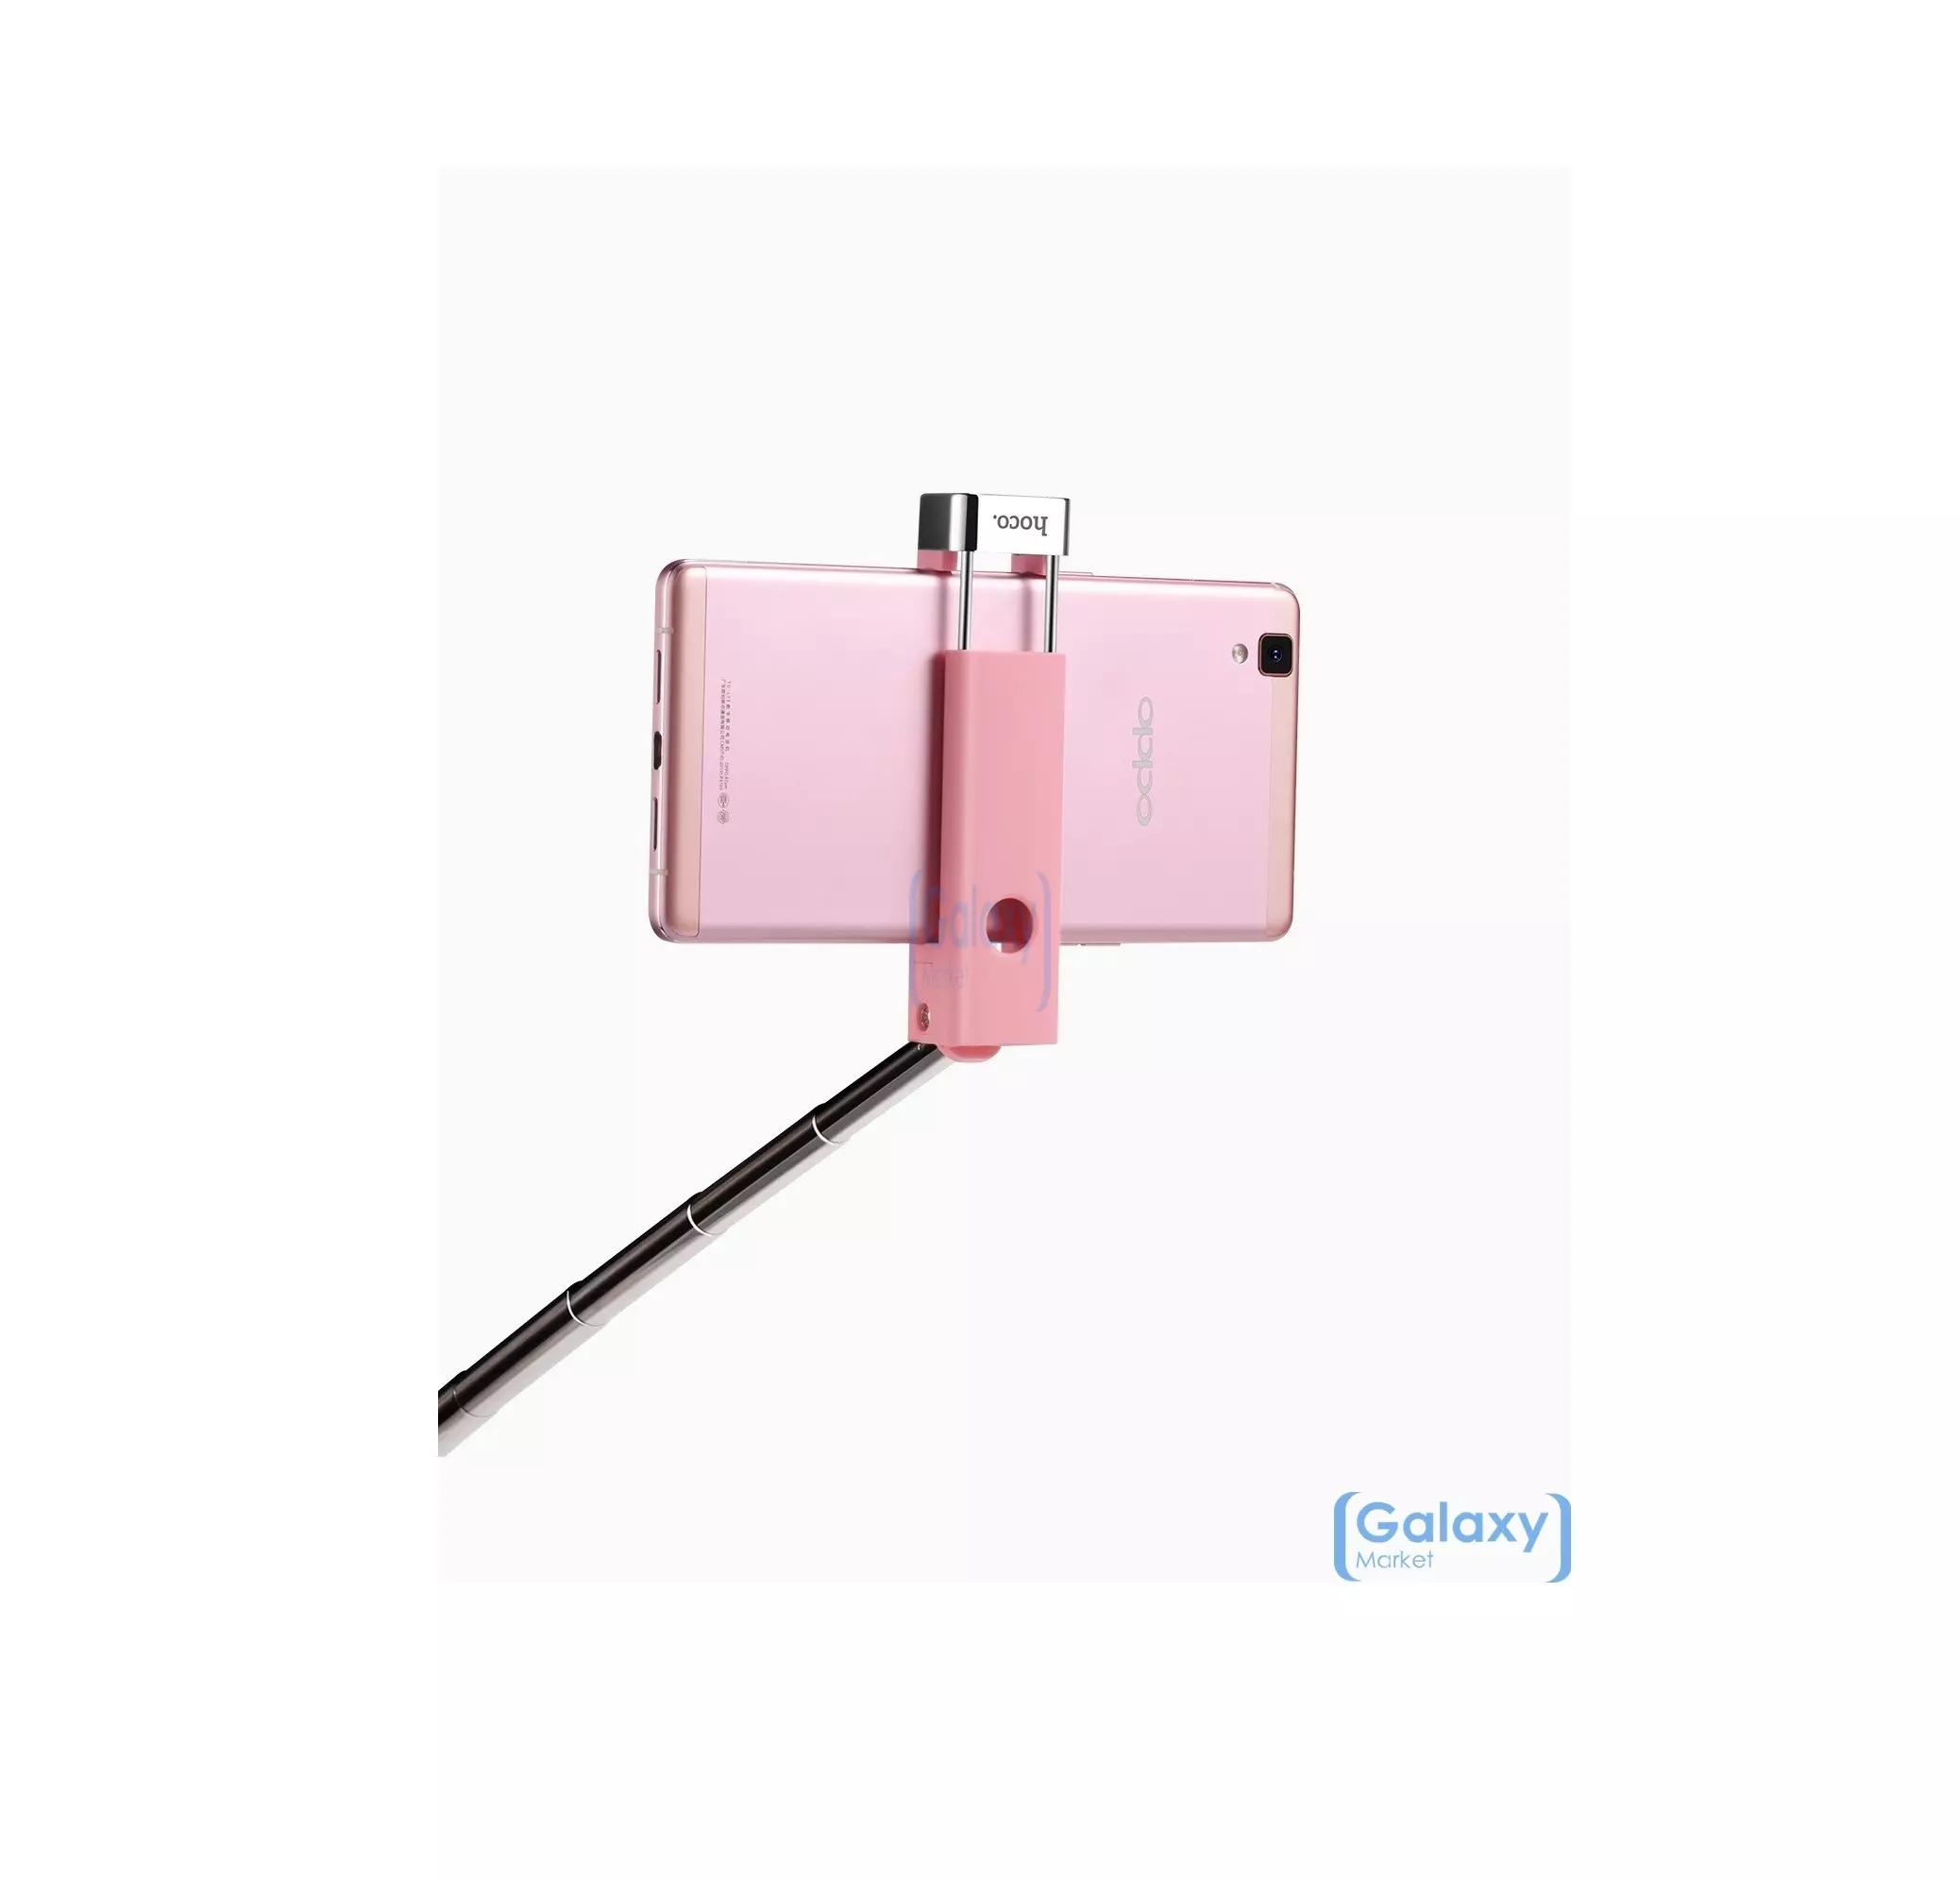  Оригинальная селфи палка Hoco K4 Beauty Wireless Selfie Stick и смартфонов Green (Зелёный)